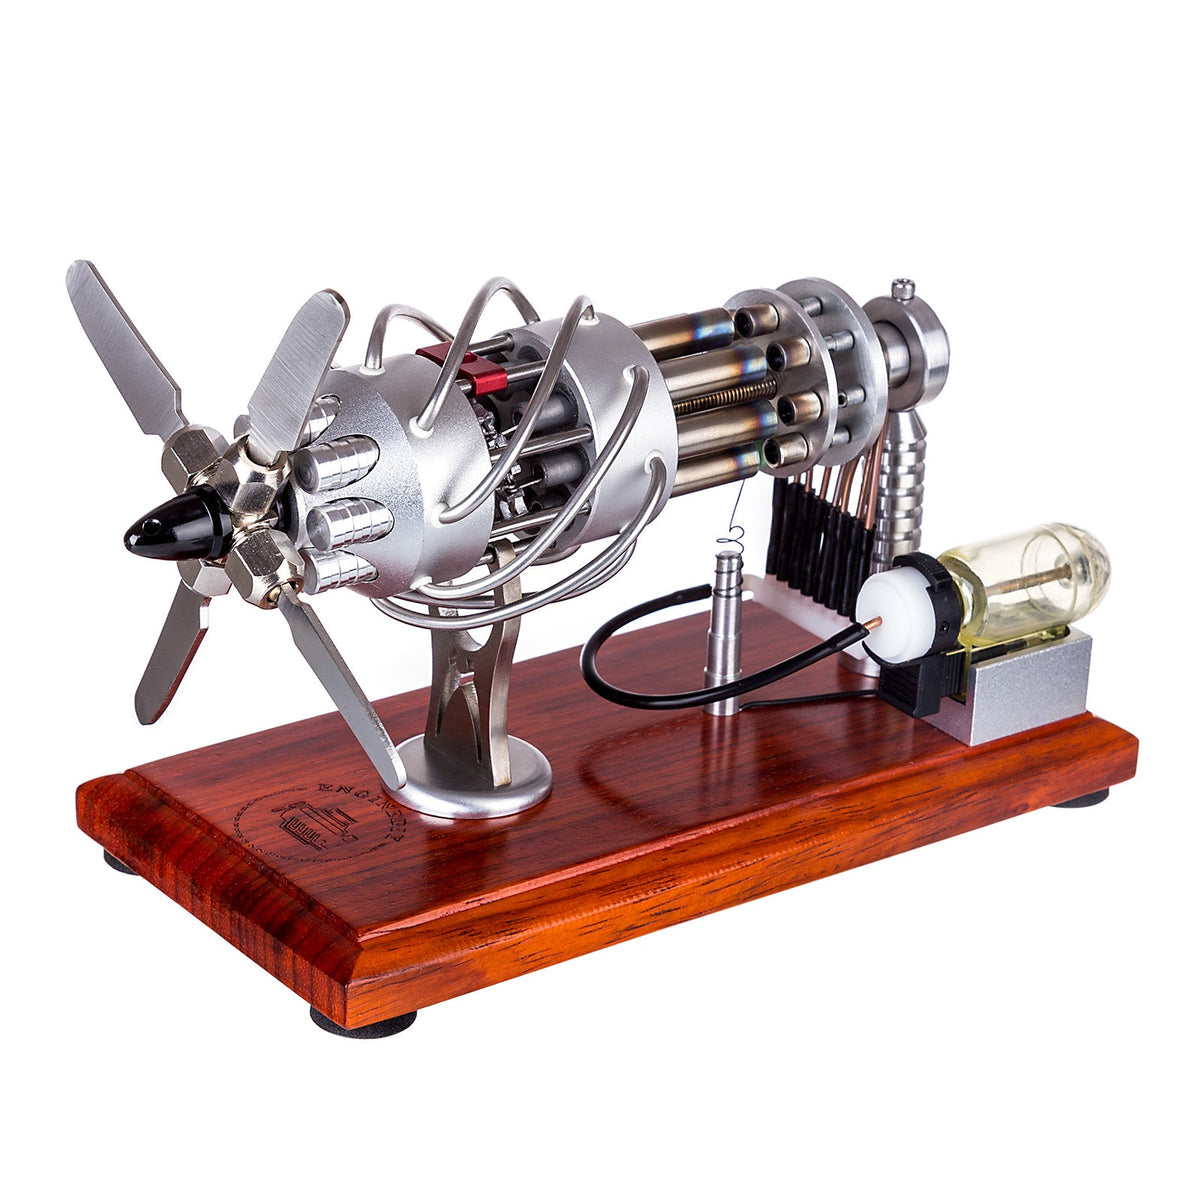 Custom 16-Cylinder Swash Plate Stirling Engine Generator Model with Voltage Digital Display Meter and LED